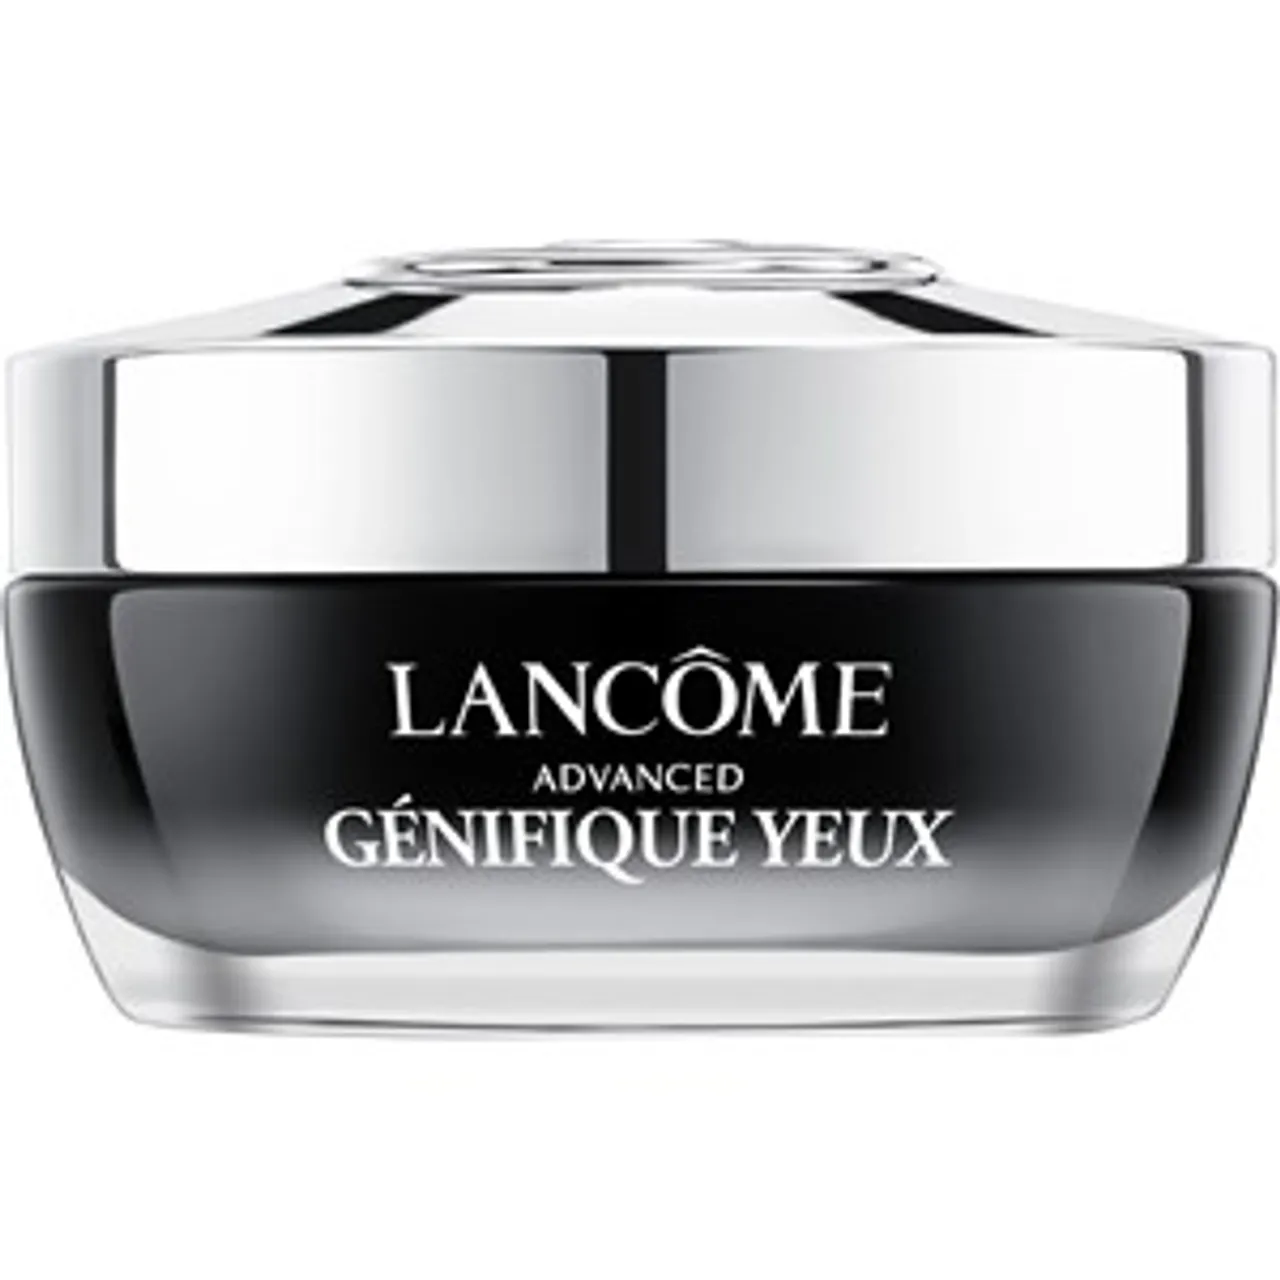 Lancôme Advanced Génifique Yeux 2 15 ml